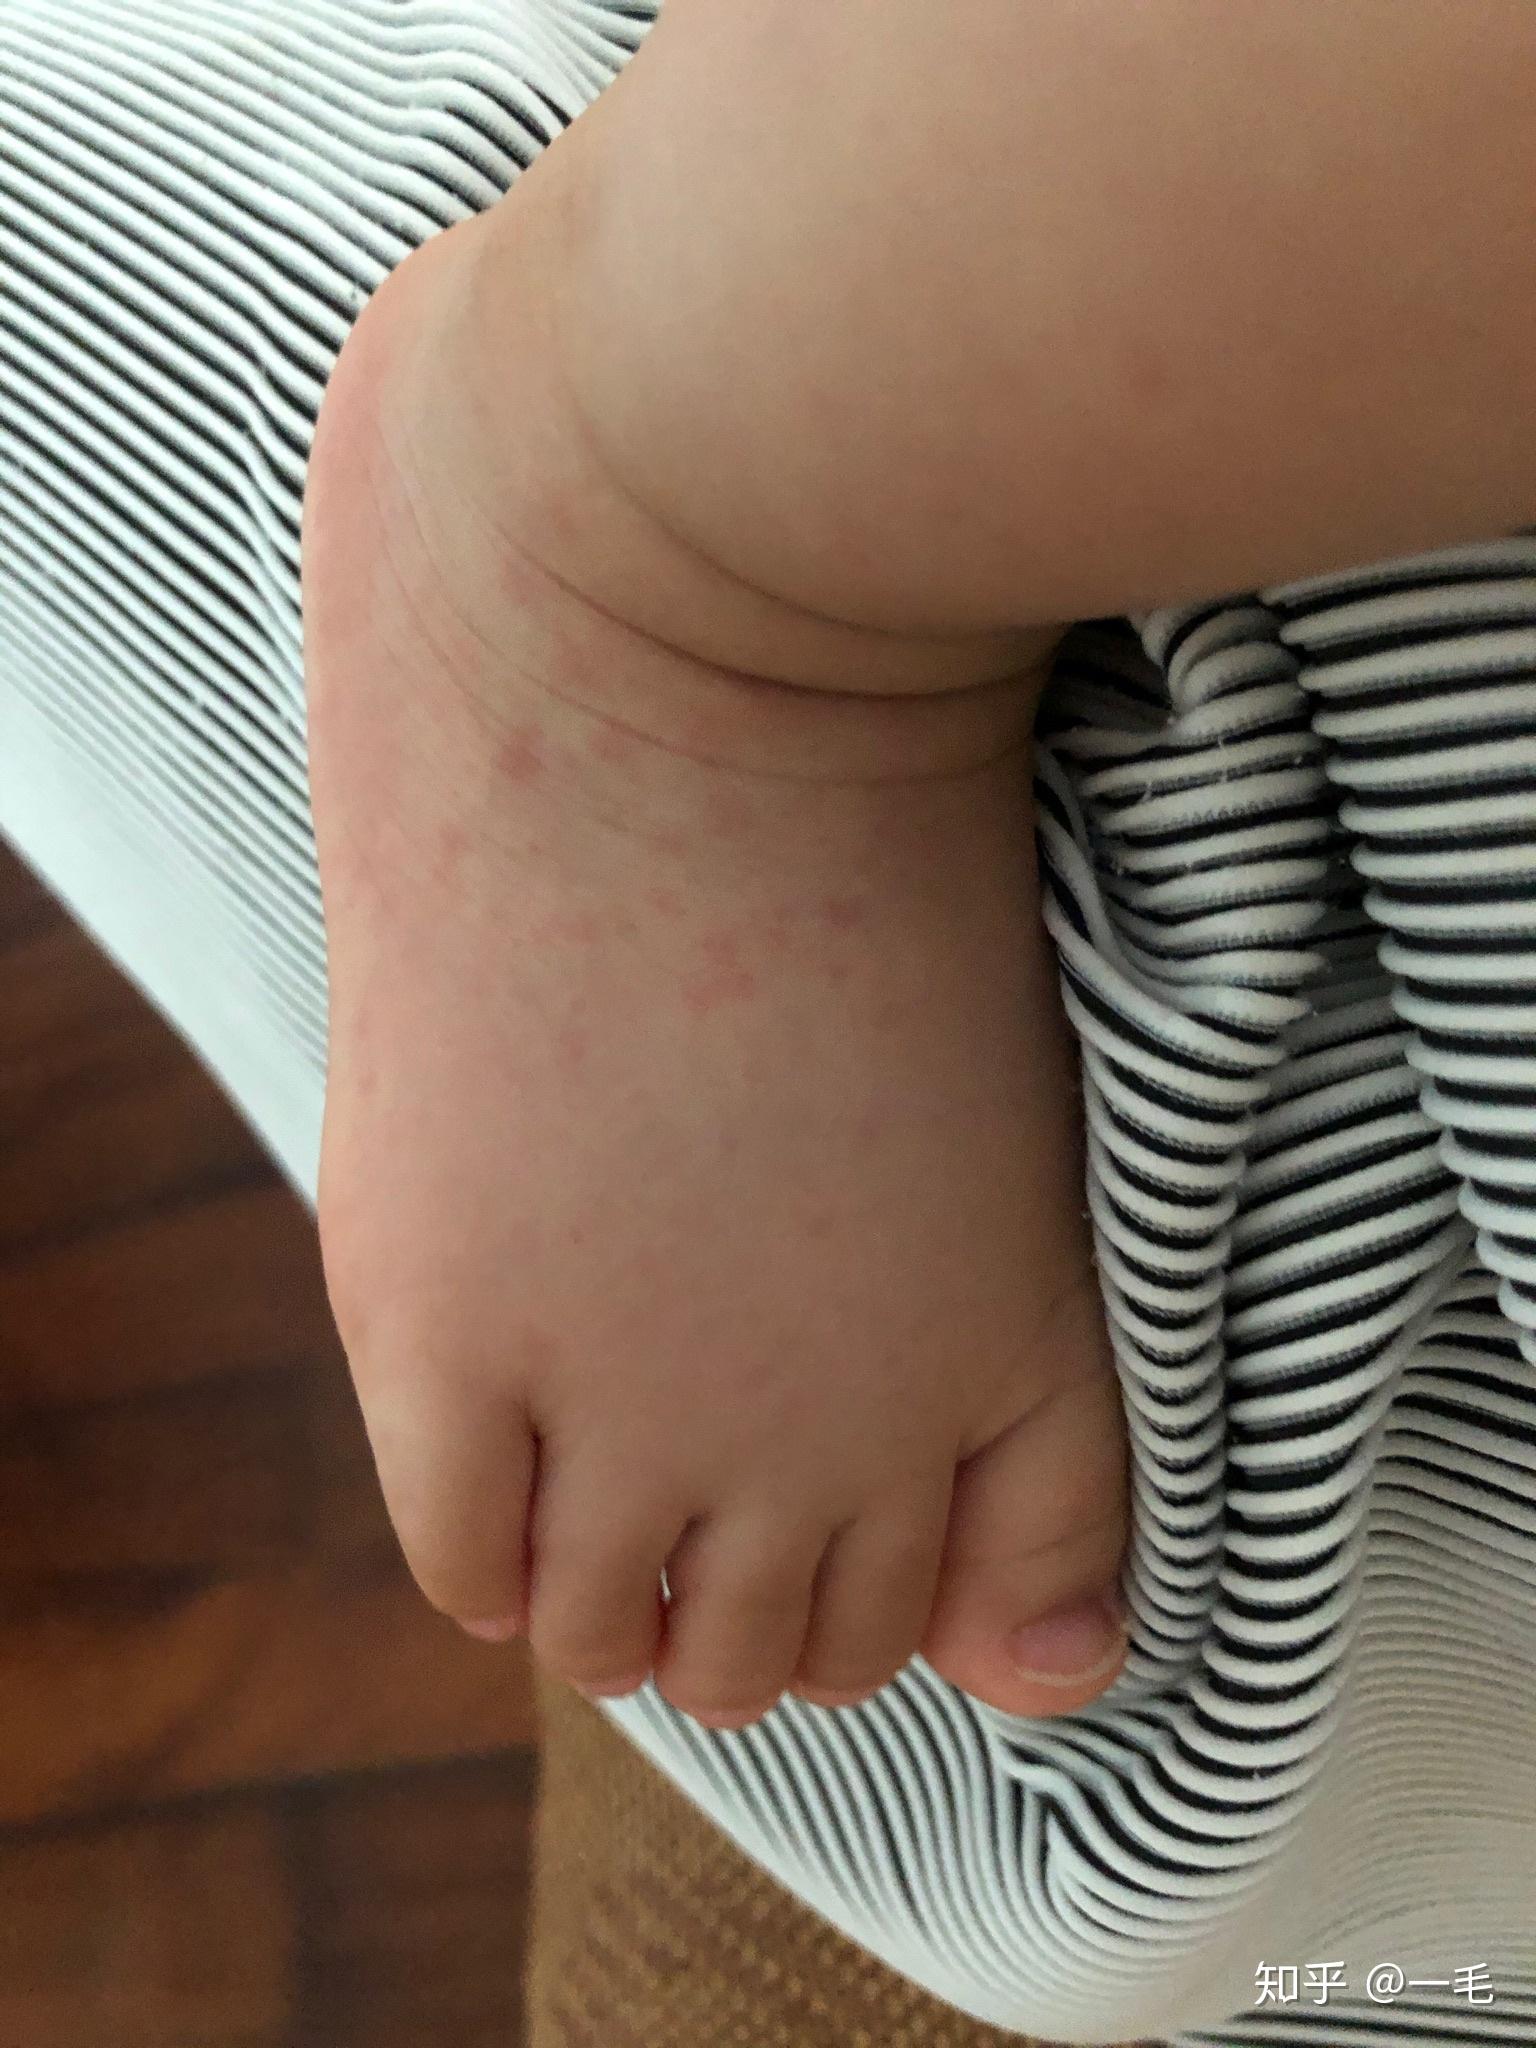 幼儿急疹子的症状图片图片